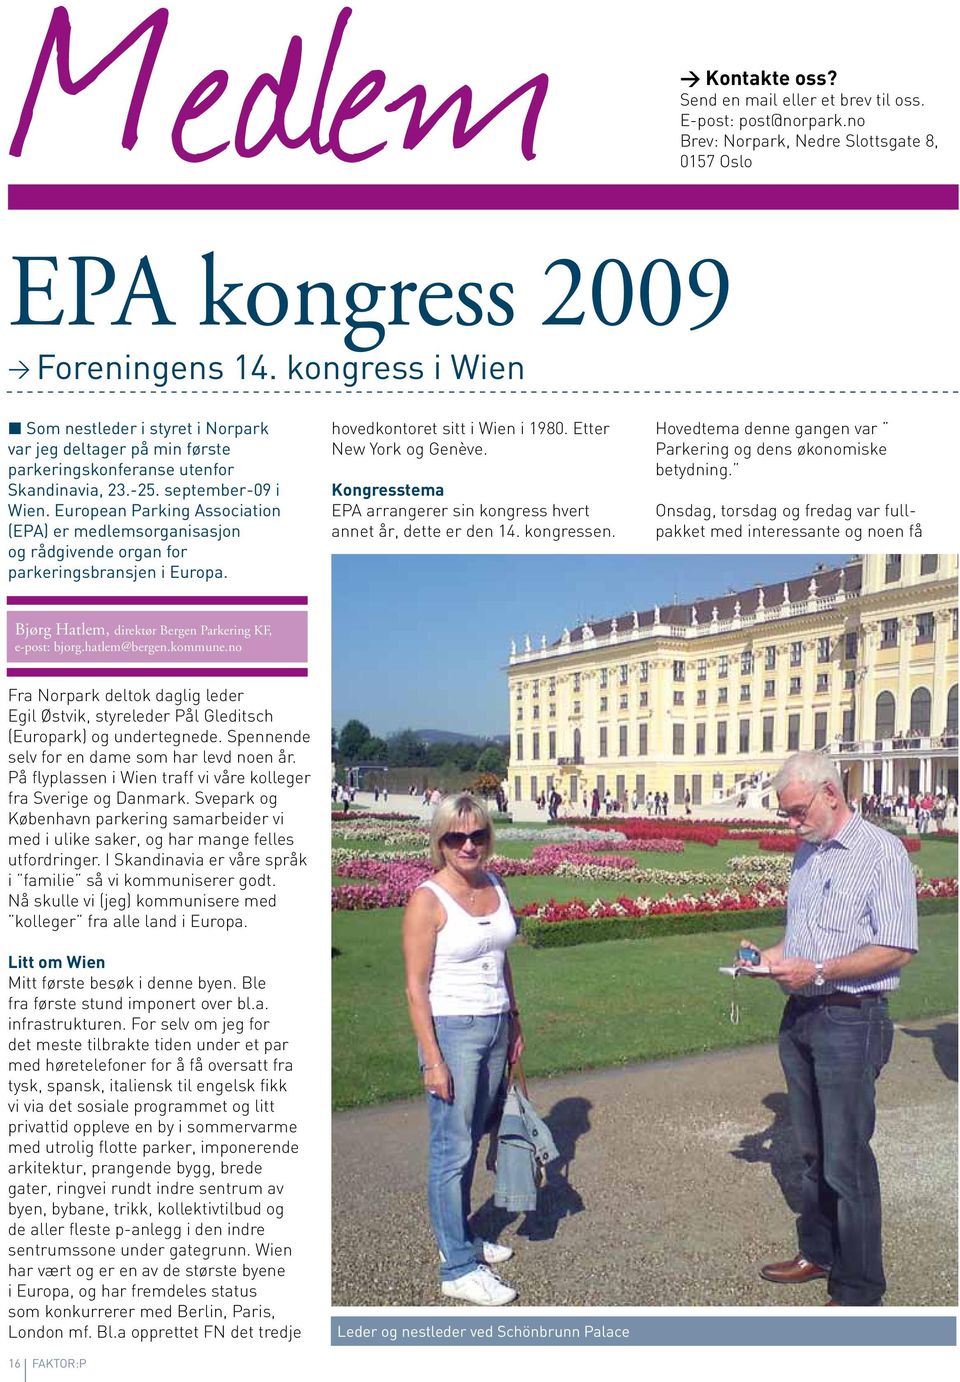 European Parking Association (EPA) er medlemsorganisasjon og rådgivende organ for parkeringsbransjen i Europa. hovedkontoret sitt i Wien i 1980. Etter New York og Genève.